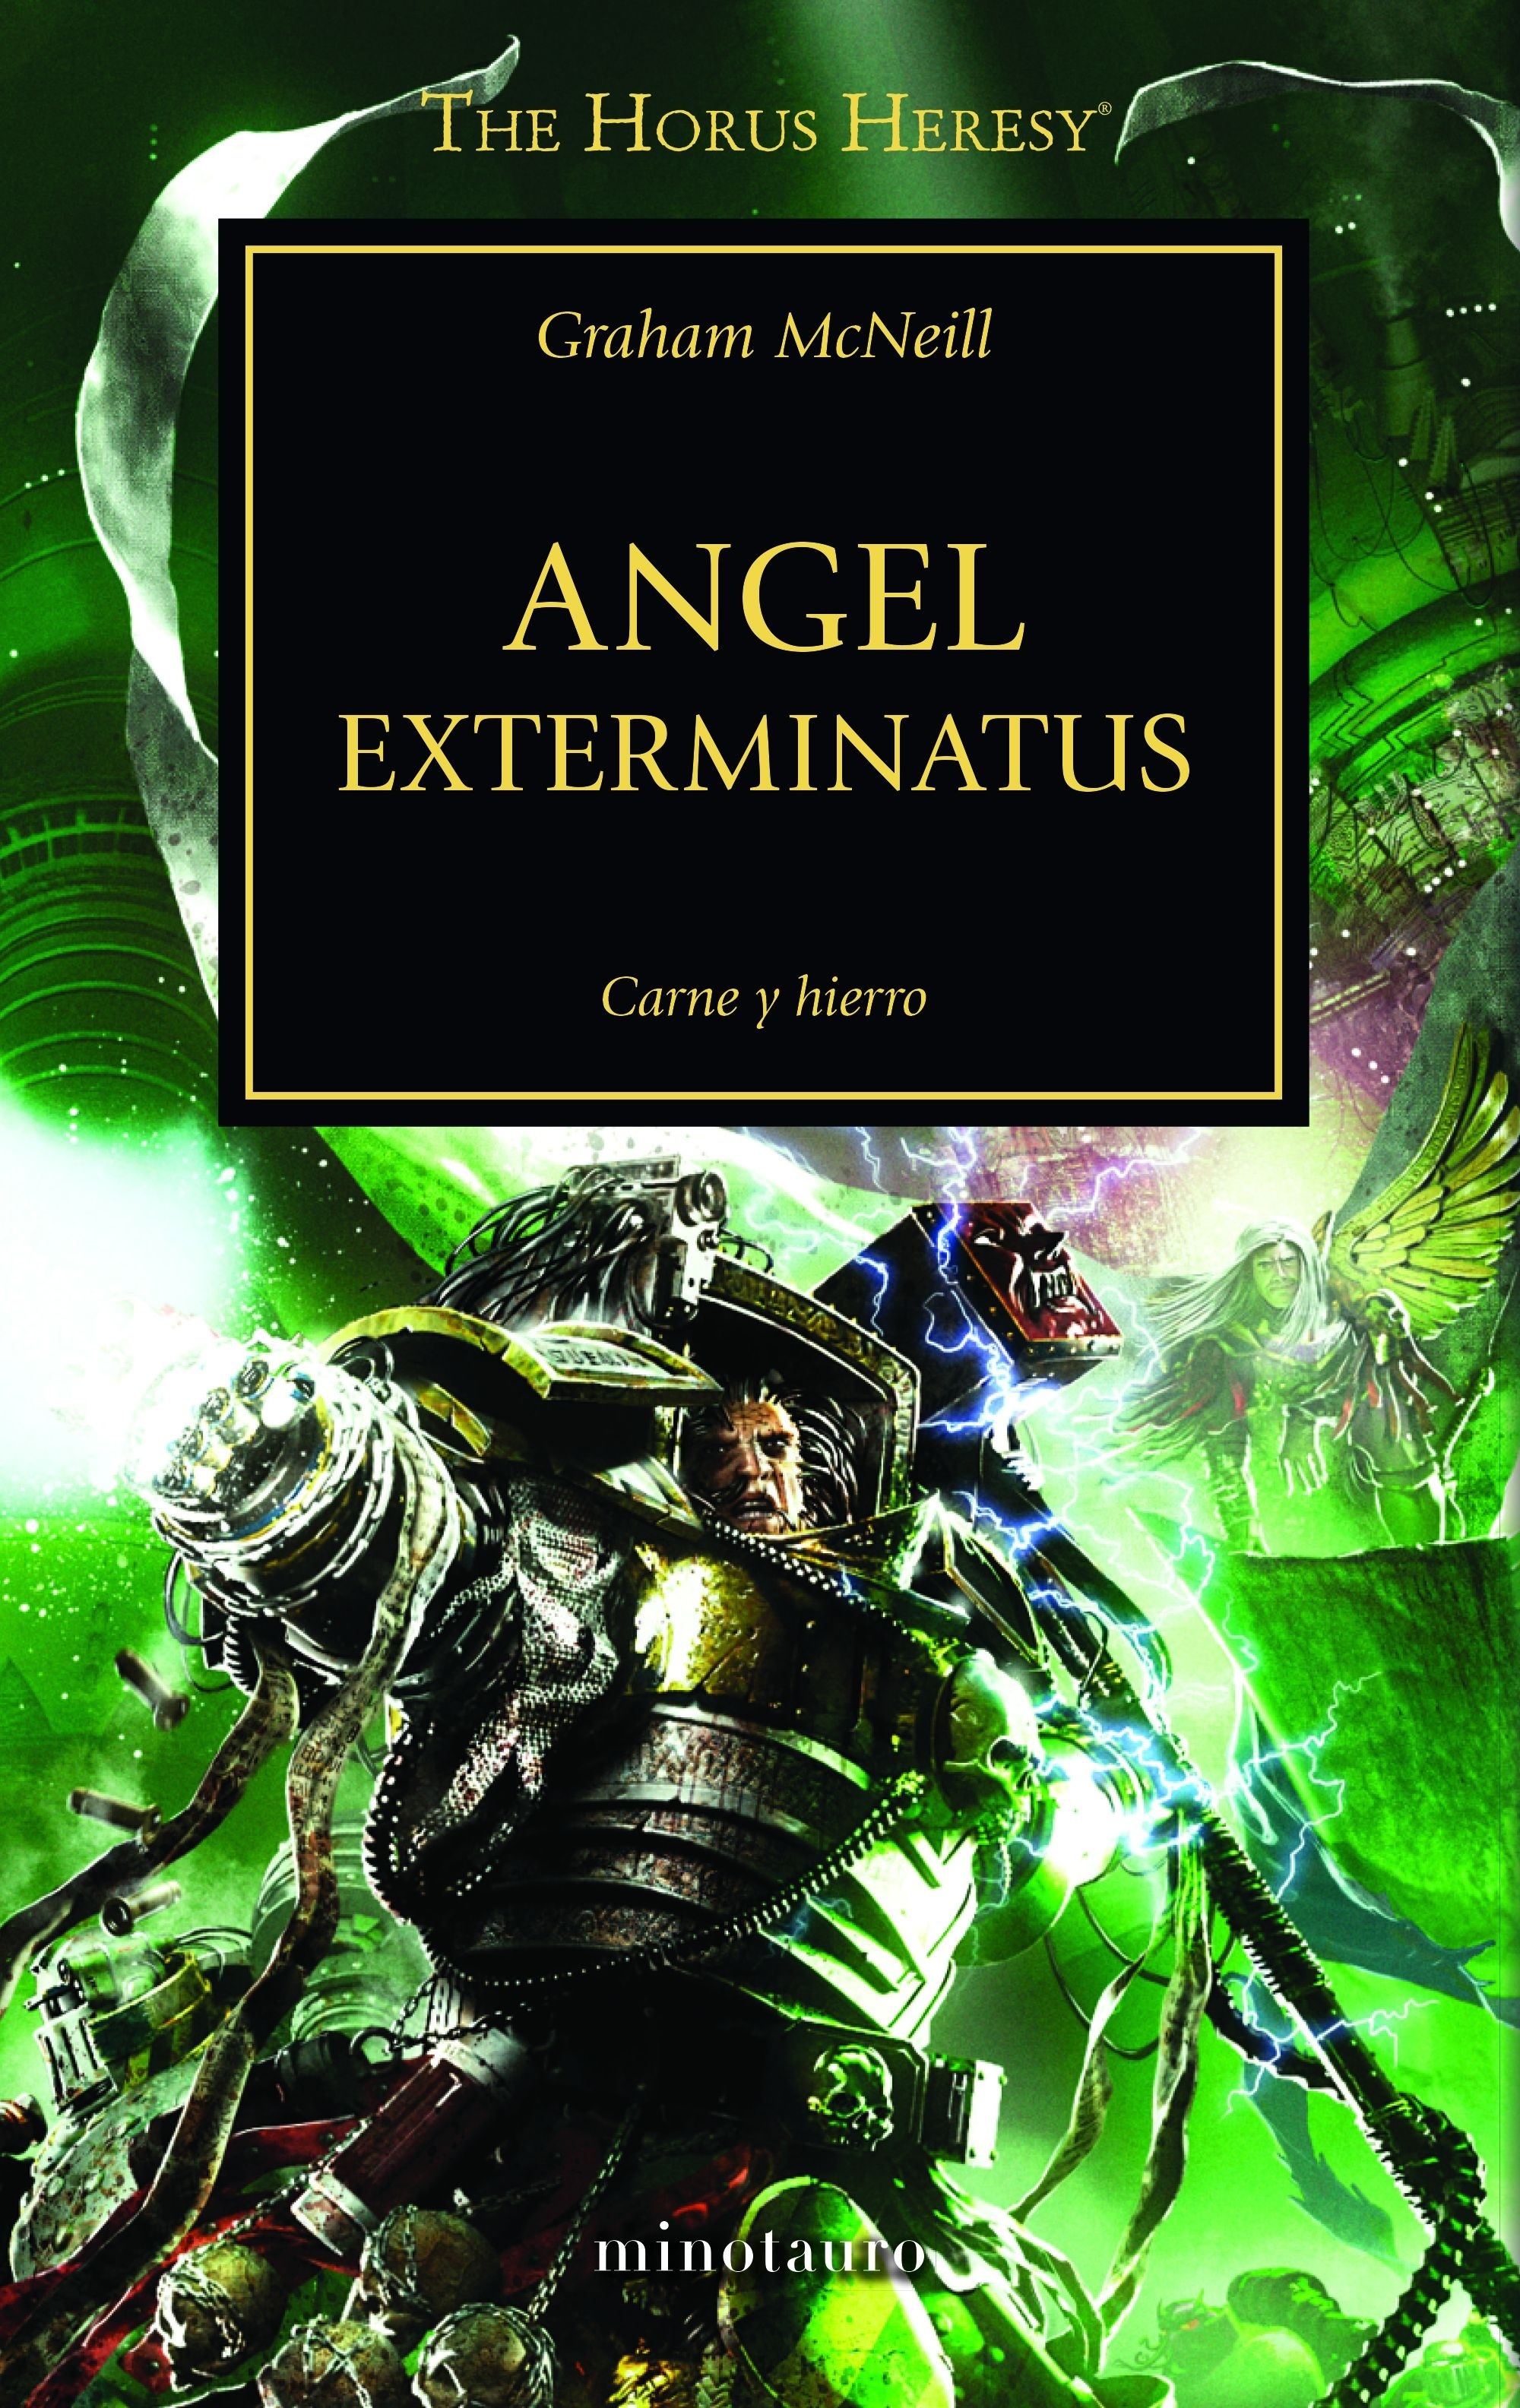 Angel Exterminatus "La Herejía de Horus 23". La Herejía de Horus 23